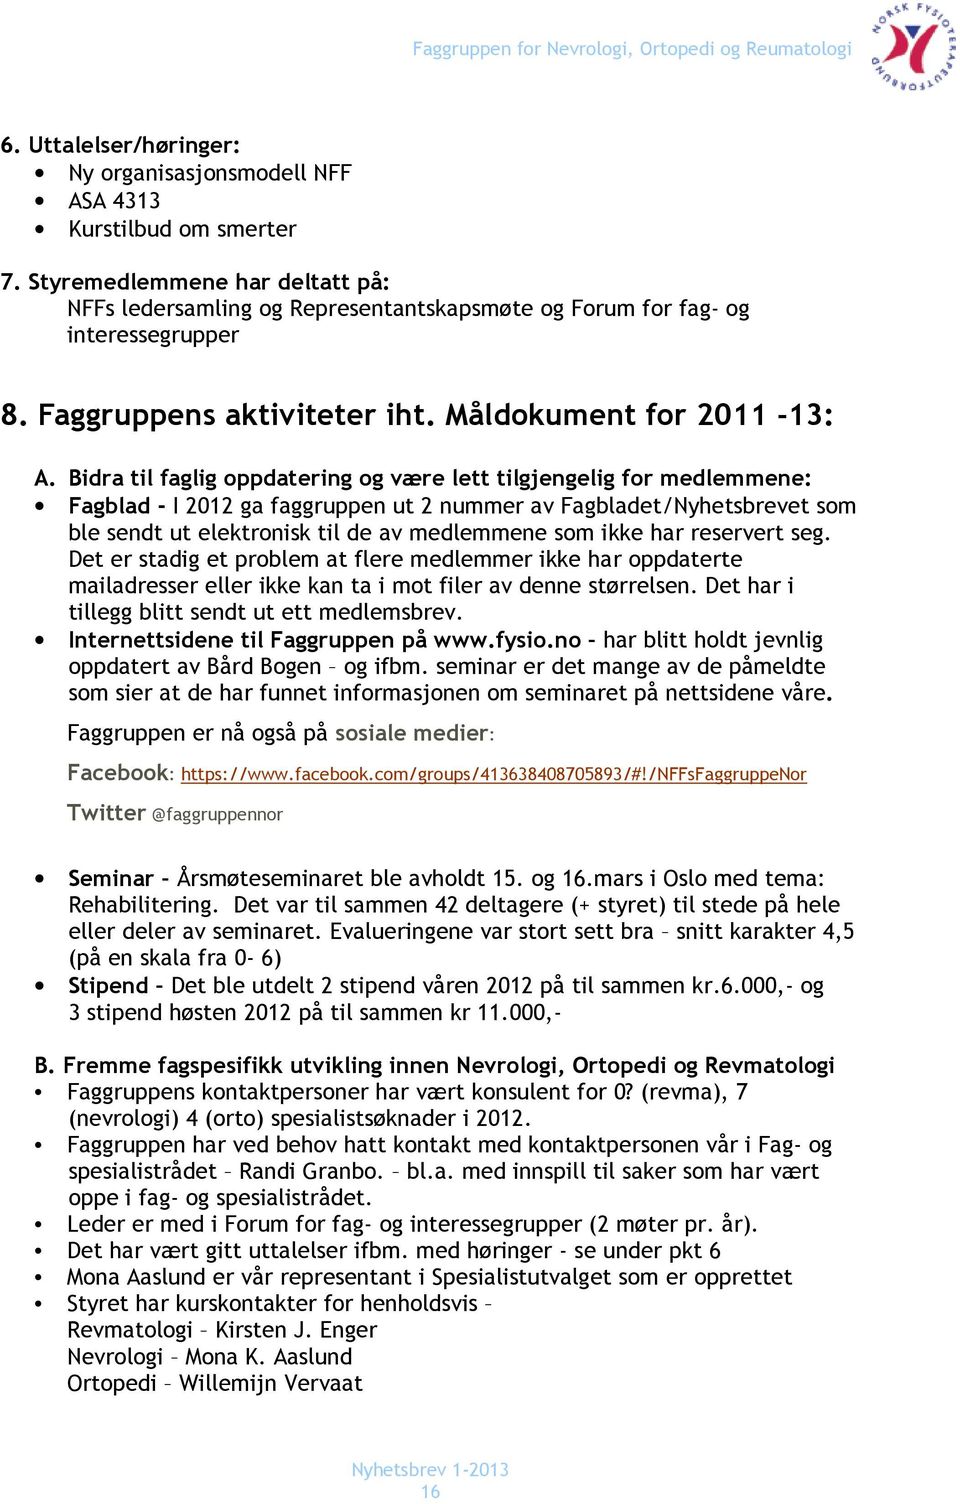 Bidra til faglig oppdatering og være lett tilgjengelig for medlemmene: Fagblad - I 2012 ga faggruppen ut 2 nummer av Fagbladet/Nyhetsbrevet som ble sendt ut elektronisk til de av medlemmene som ikke